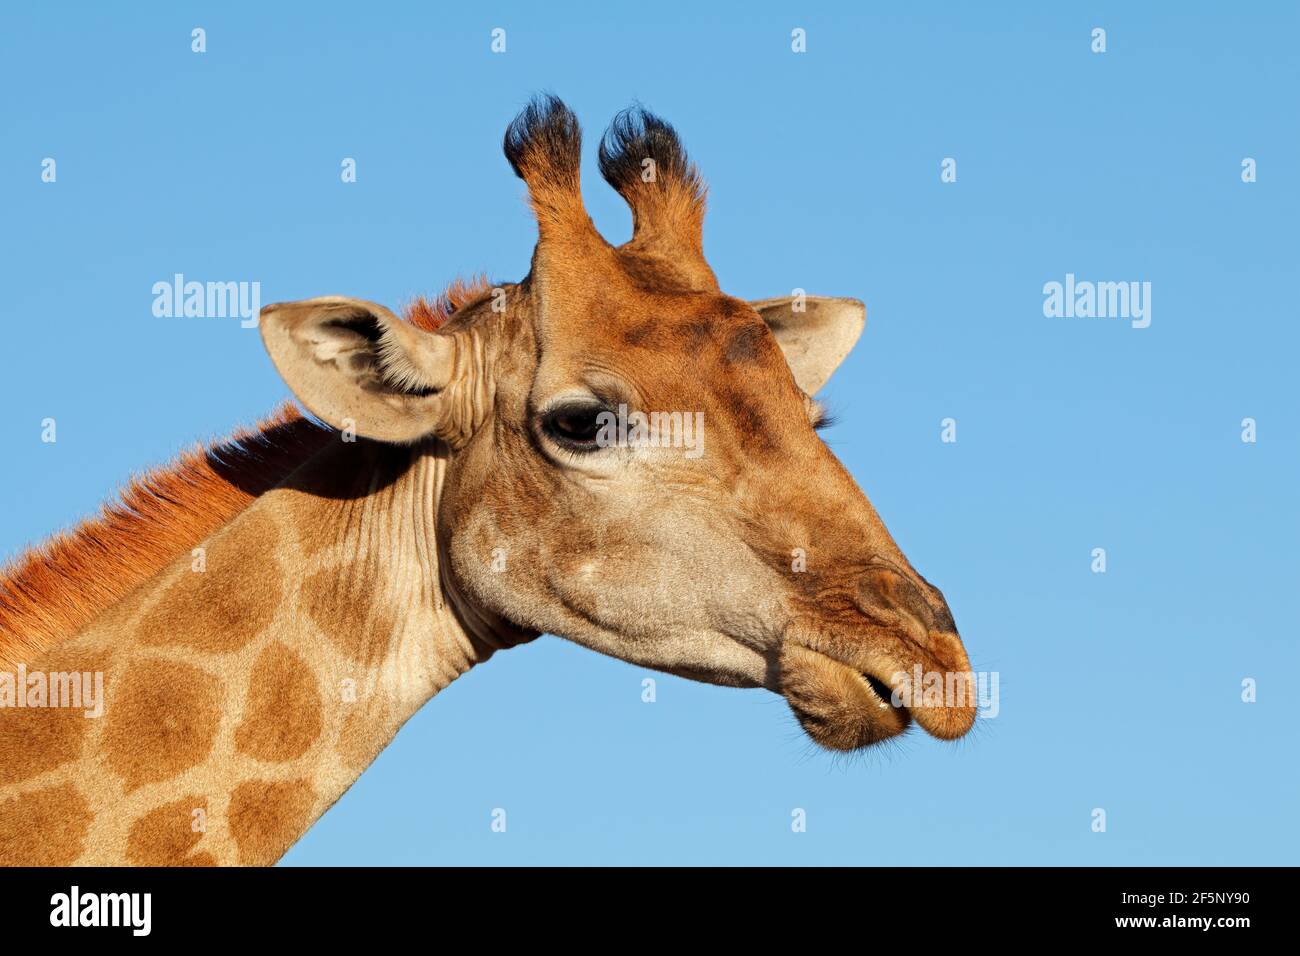 Portrait d'une Girafe (Giraffa camelopardalis) contre un ciel bleu, Afrique du Sud Banque D'Images